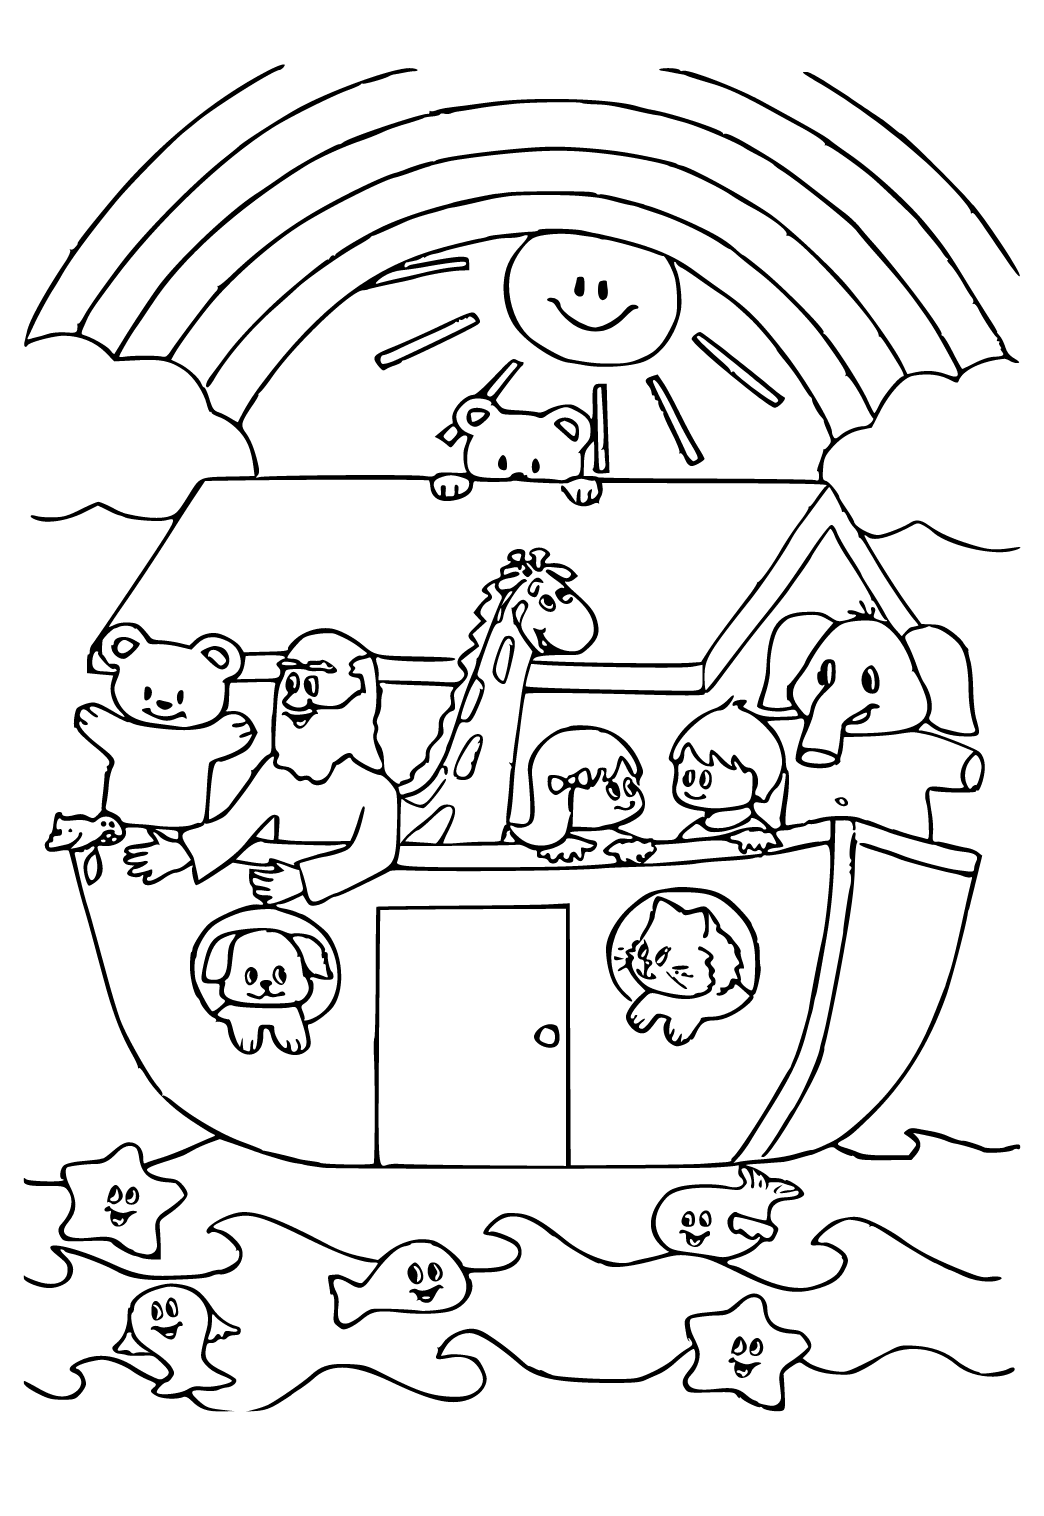 De Ark van Noah